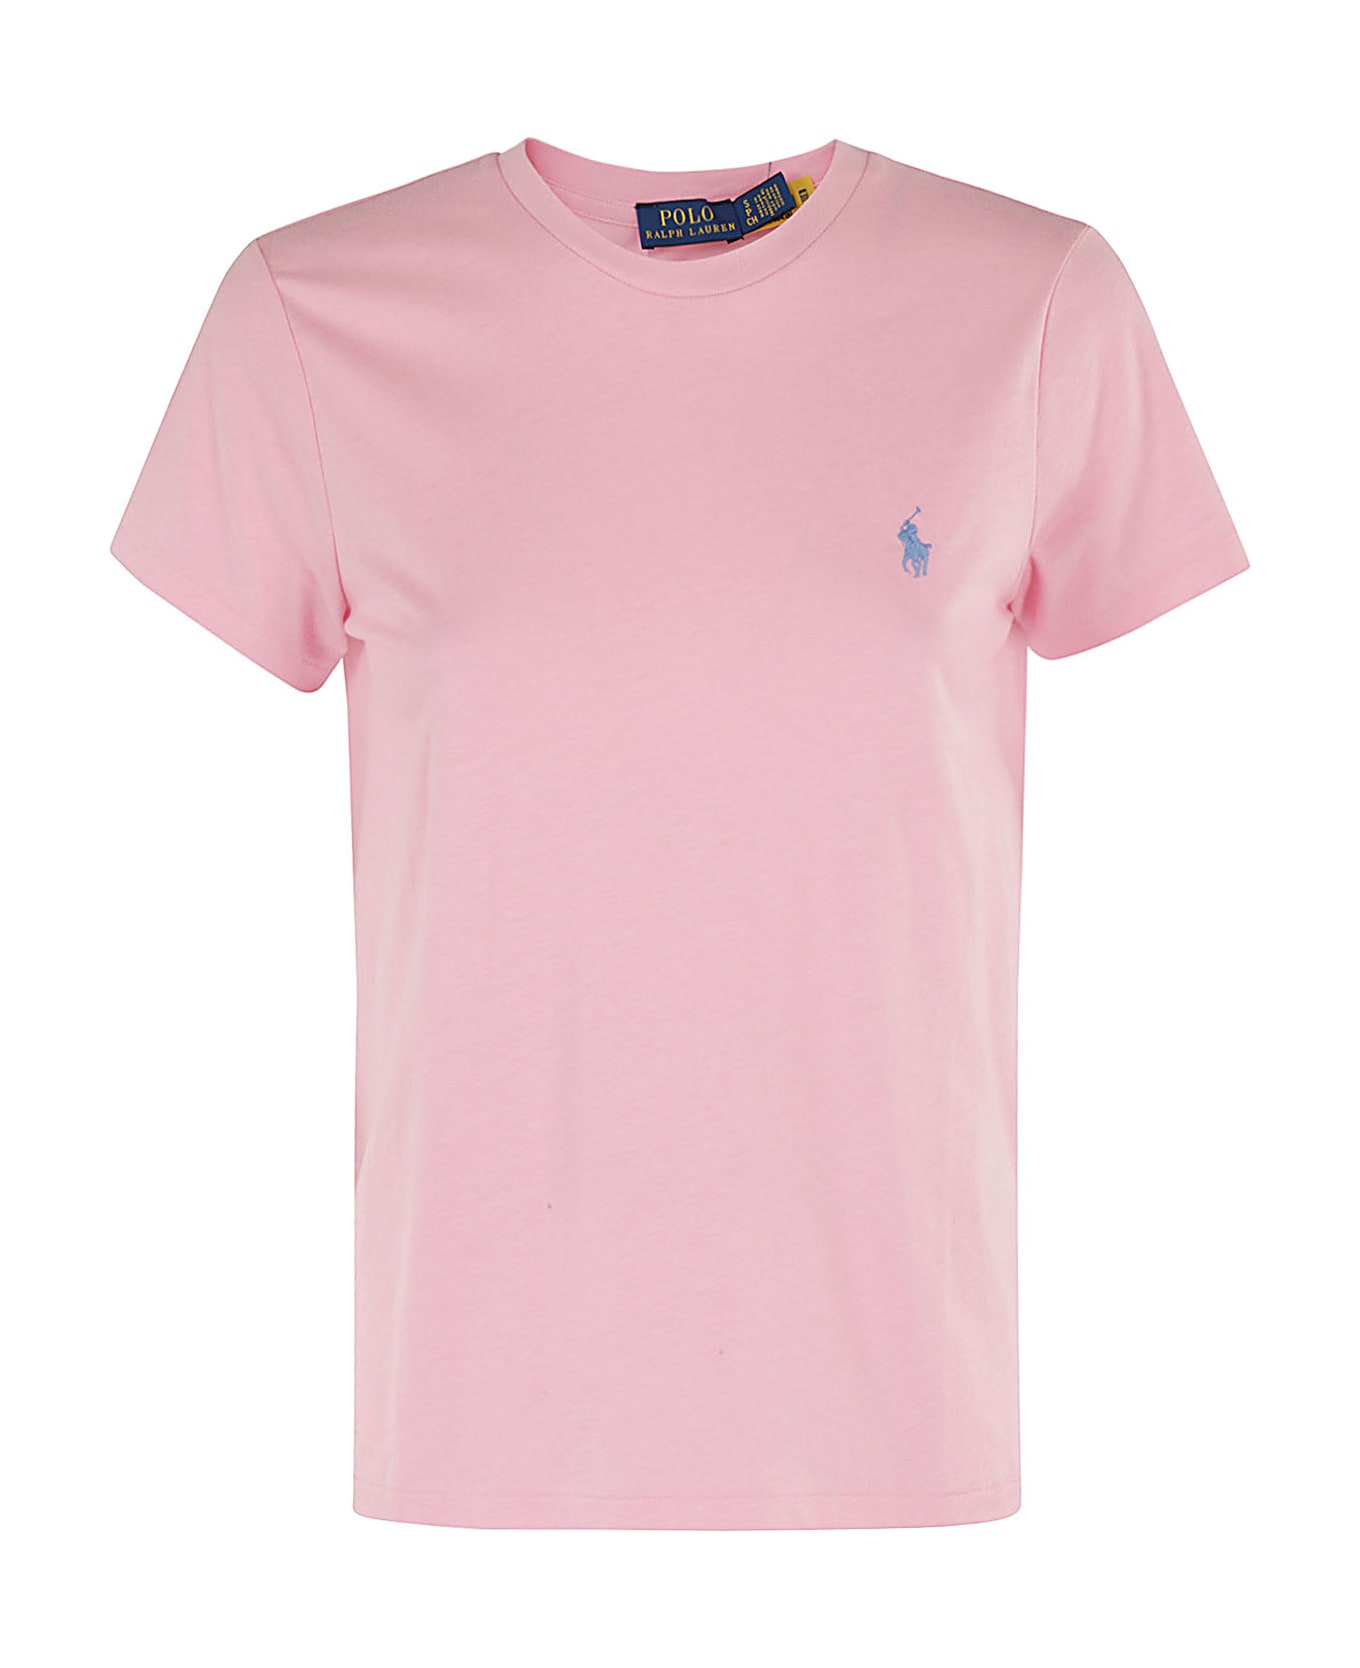 Polo Ralph Lauren New Rltpp - Course Pink Tシャツ